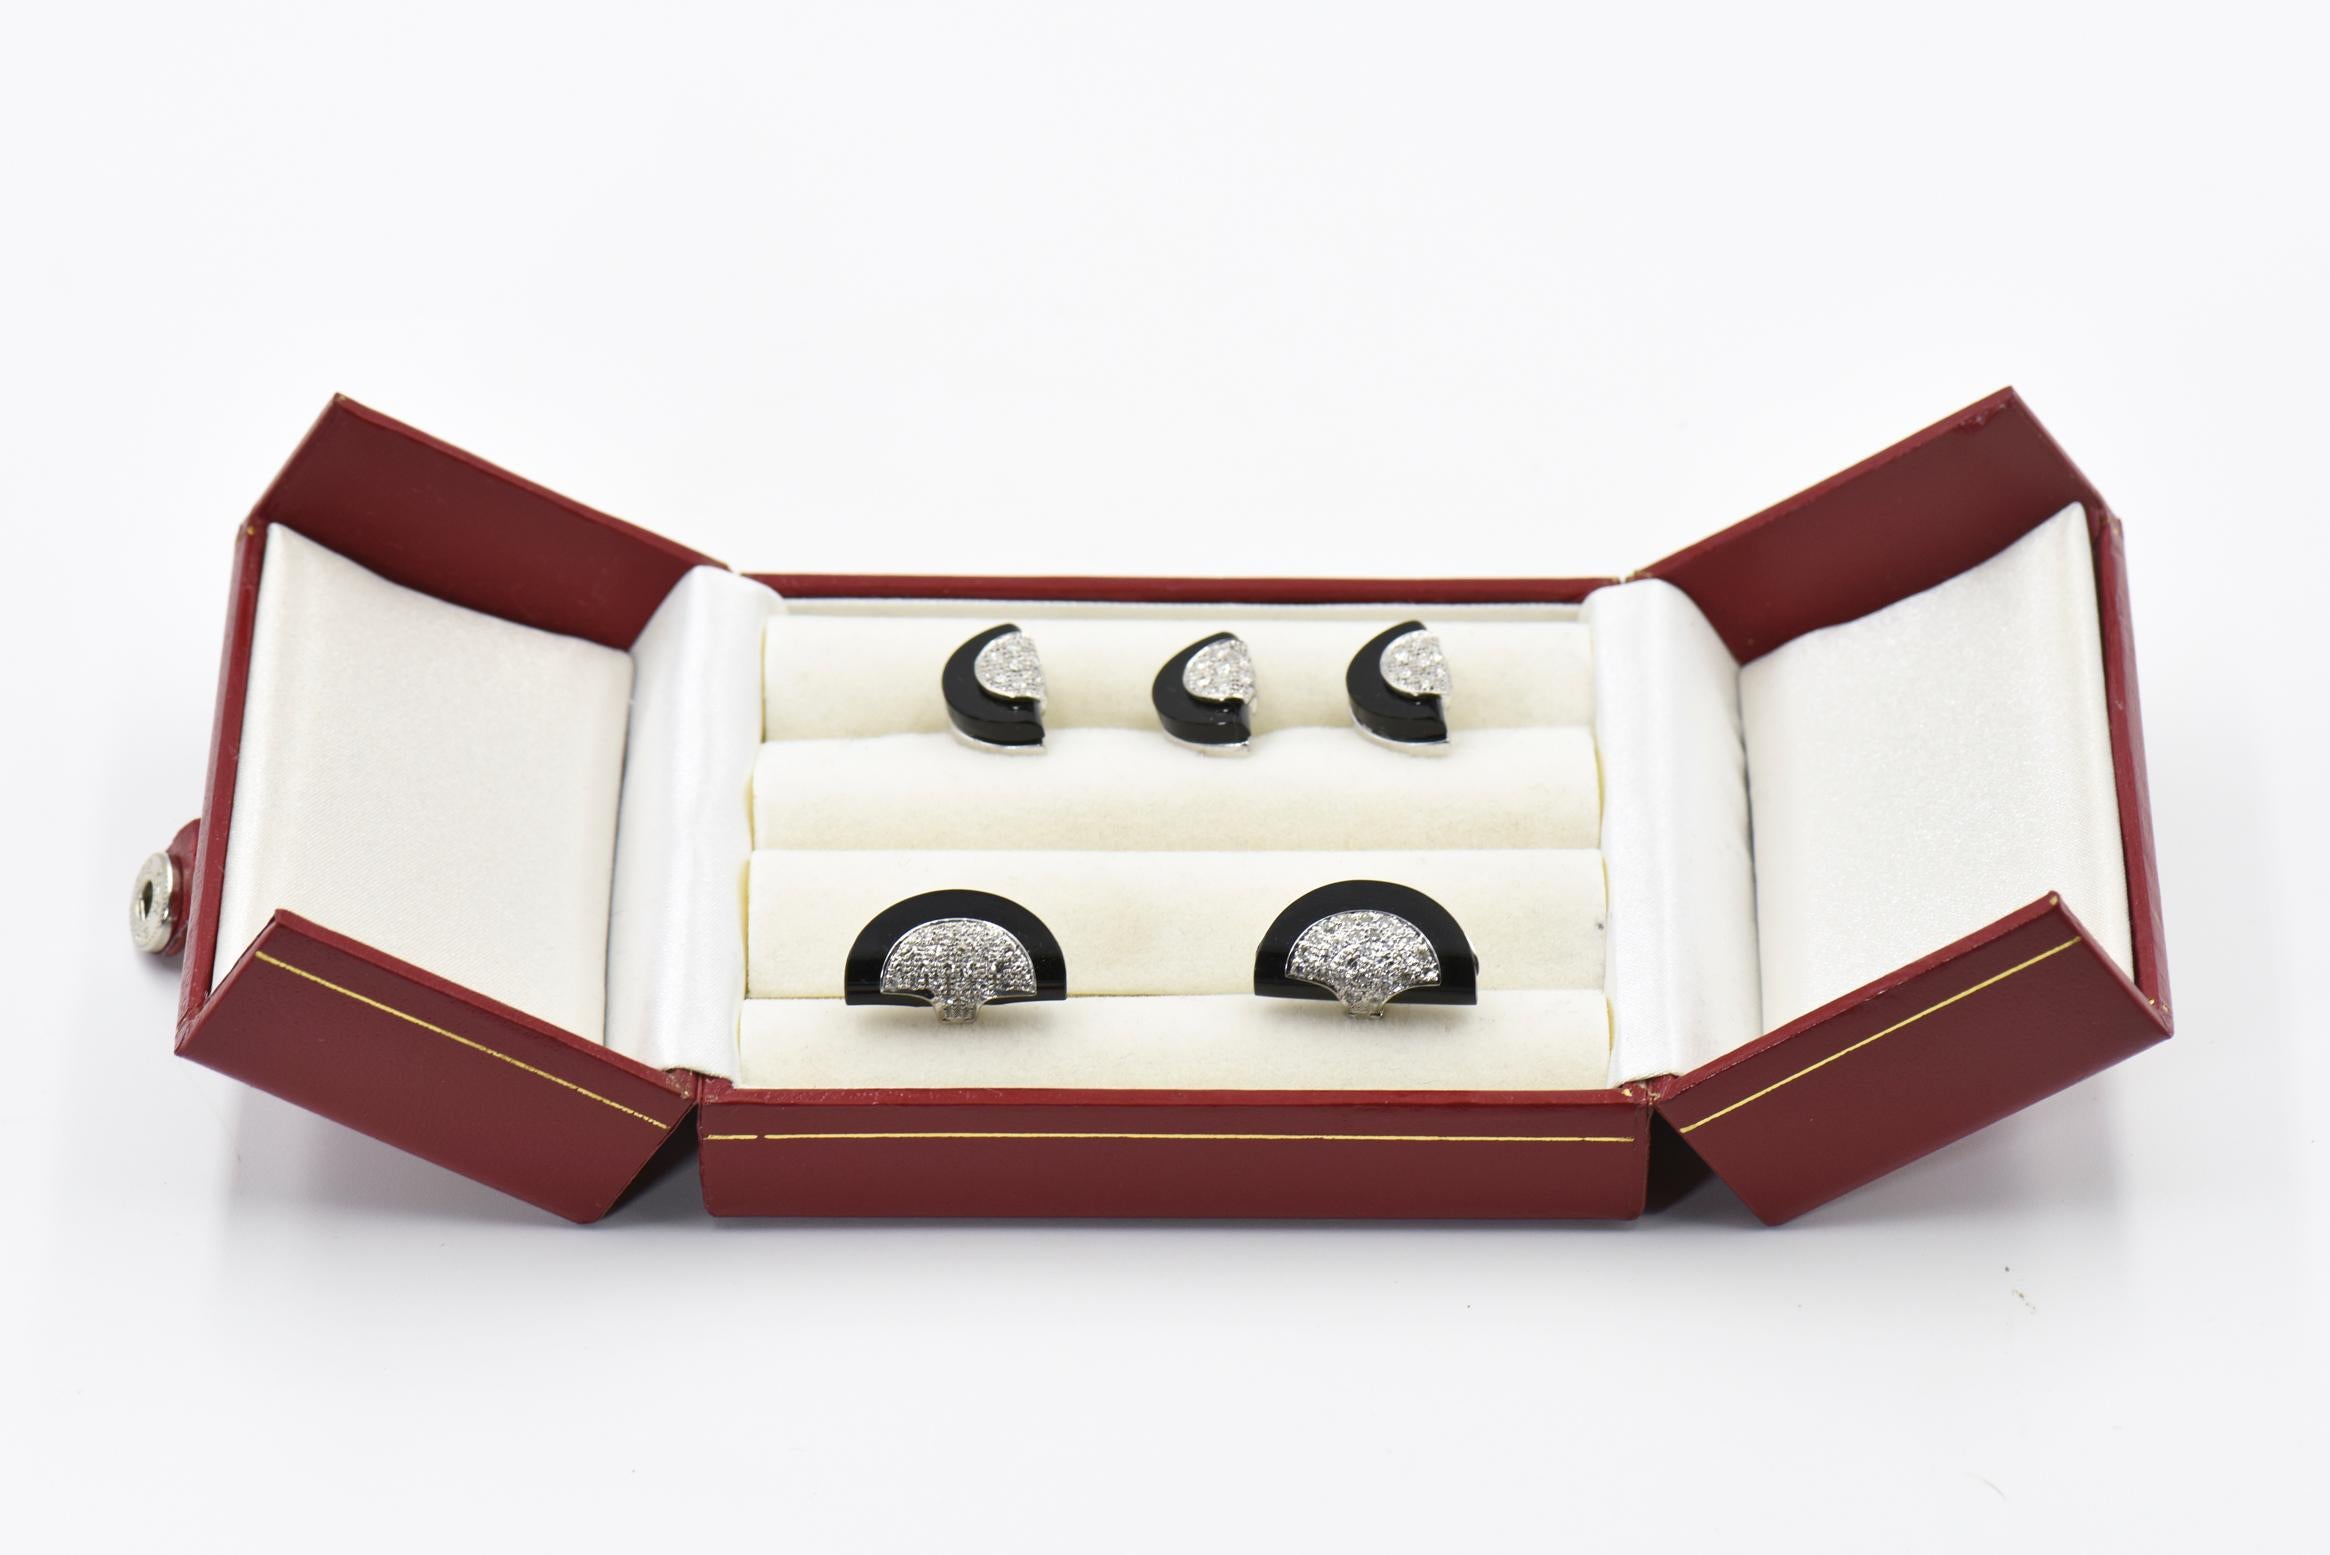 Atemberaubendes Ohrstecker-Set mit einem Diamant-Halbkreis auf einem Onyx-Halbkreis, montiert in 14k Weißgold. Das Set besteht aus einem Paar Manschettenknöpfen und 3 Ohrsteckern.  Die Manschettenknöpfe haben eine 